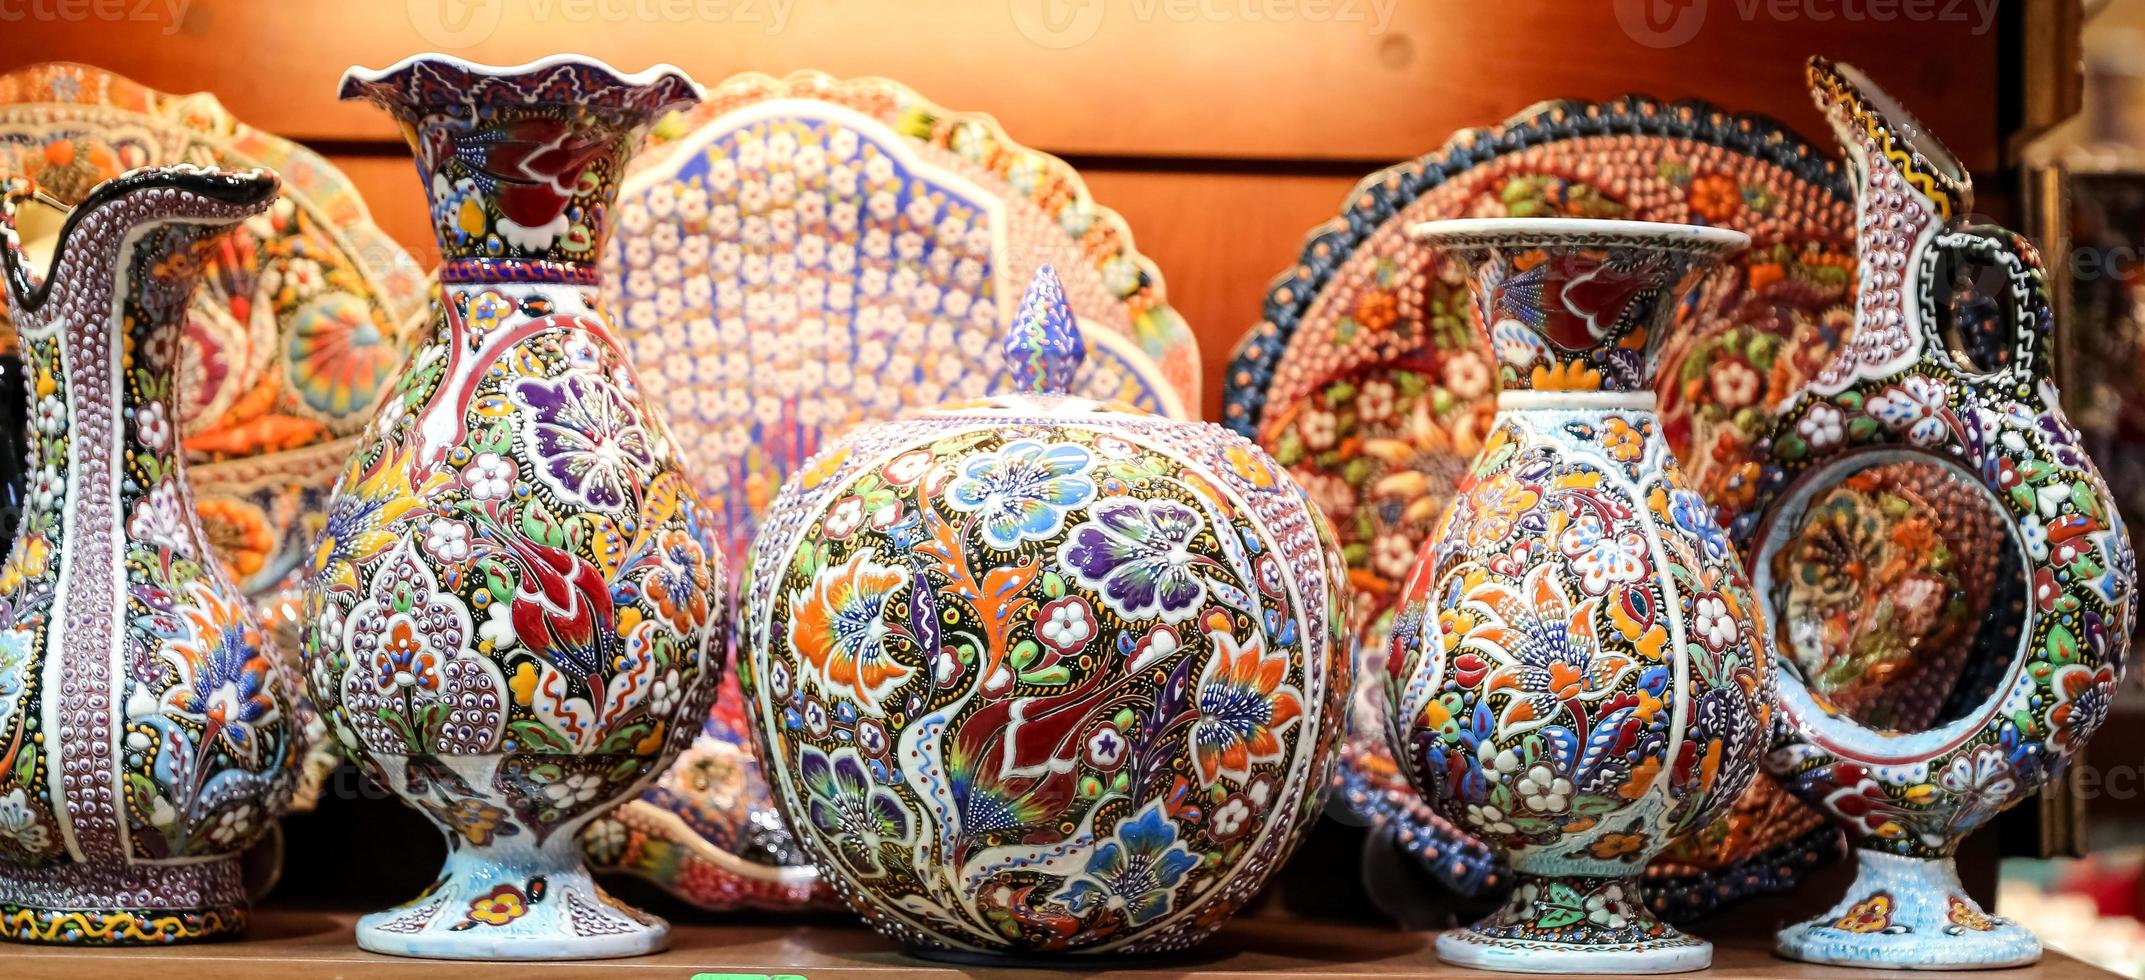 cerámica turca en el gran bazar, estambul, turquía foto